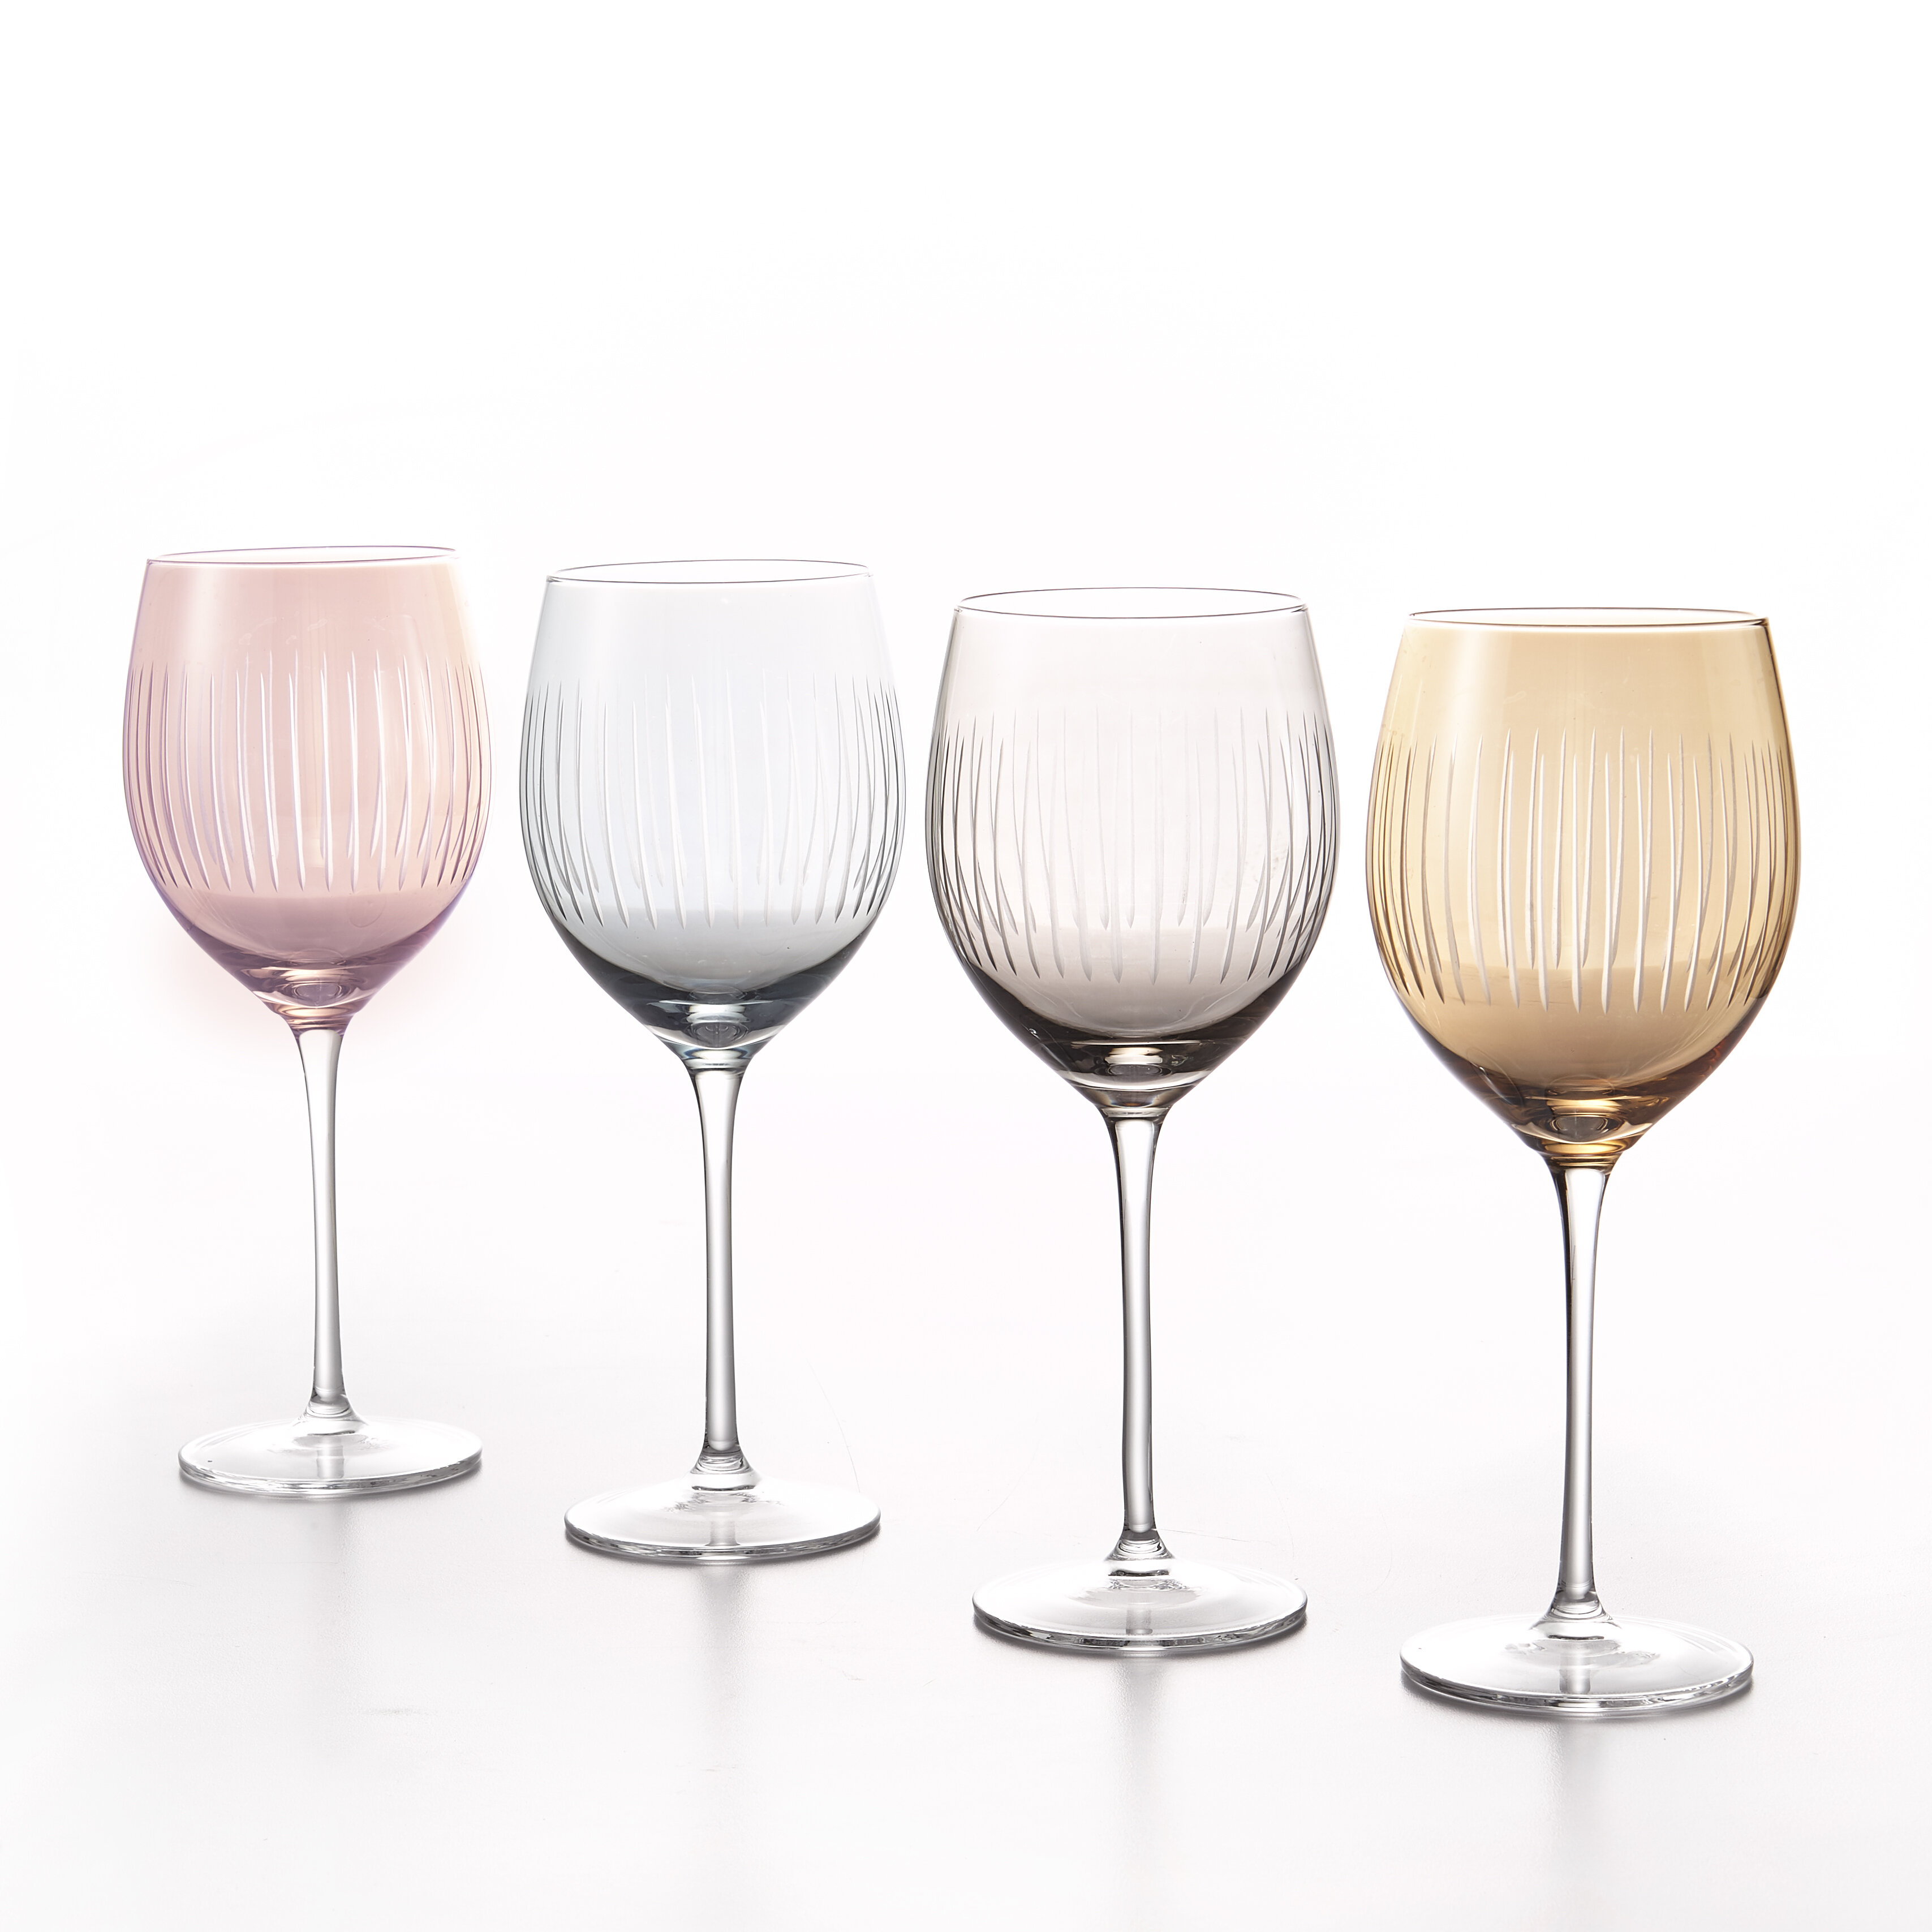 Quinn Amber White Wine Glasses  White wine glass set, White wine glasses,  Amber glassware